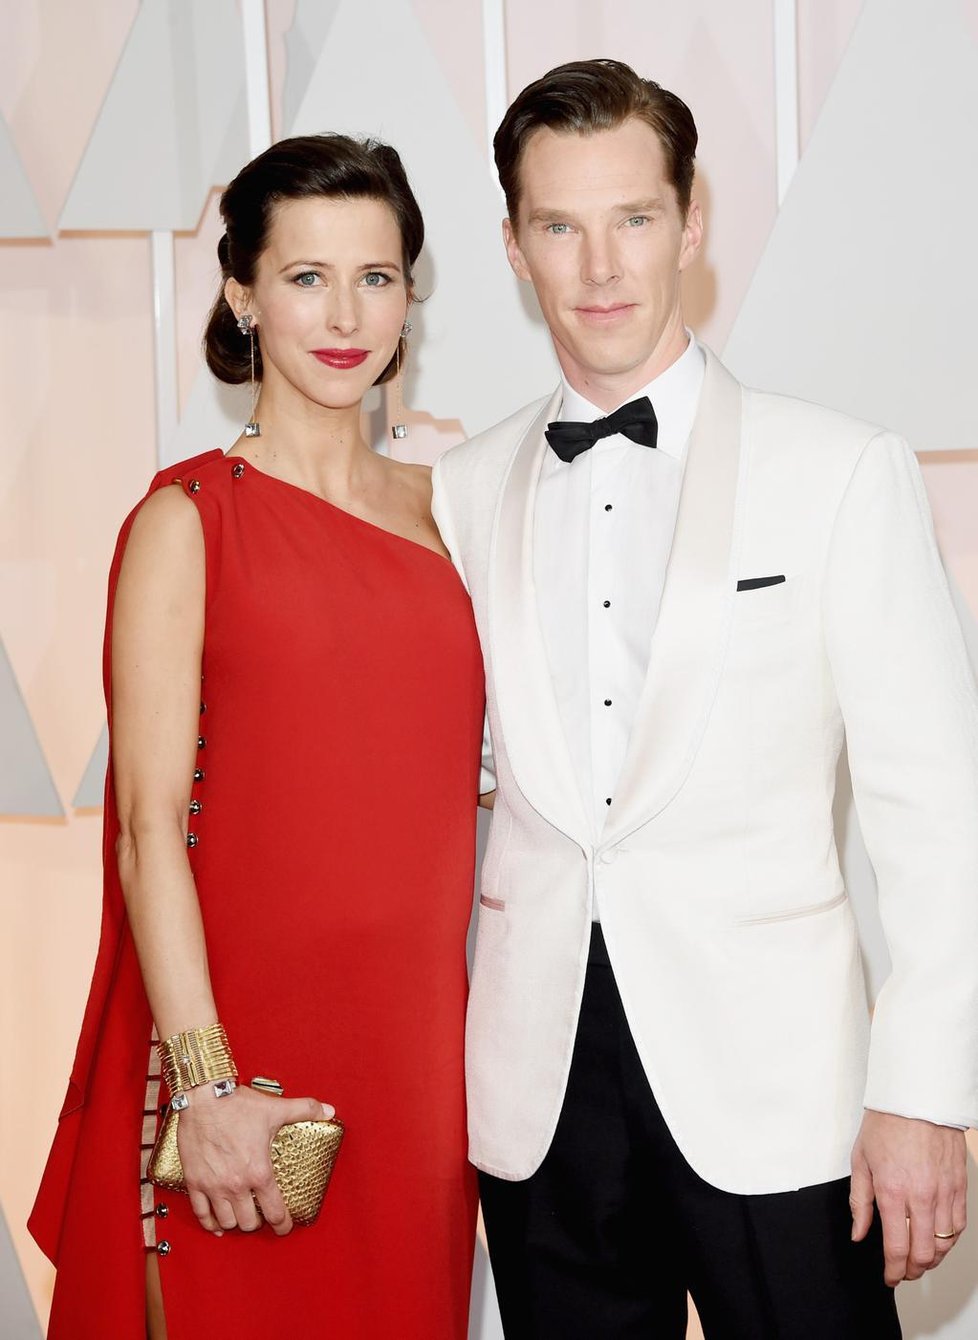 Herec Benedict Cumberbatch (39) s manželkou Sophií Hunter (37) přivítali na svět prvního potomka letos v červnu a pojmenovali ho Christopher.